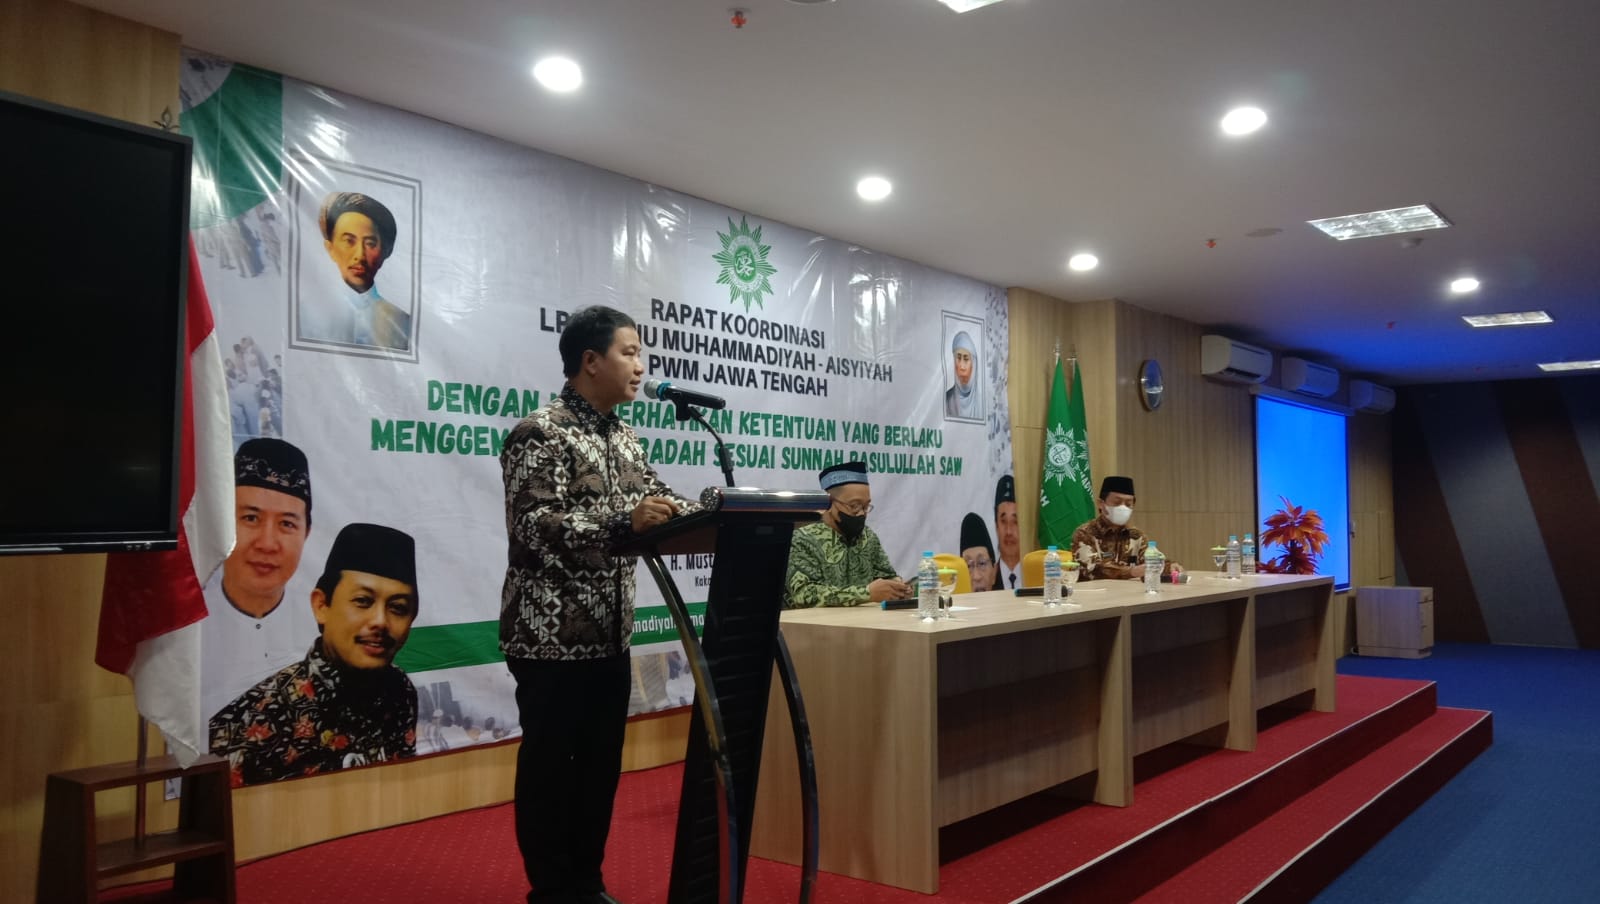 Rapat Koordinasi LPPKBIHU Muhammadiyah ‘Aisyiyah se Jawa Tengah